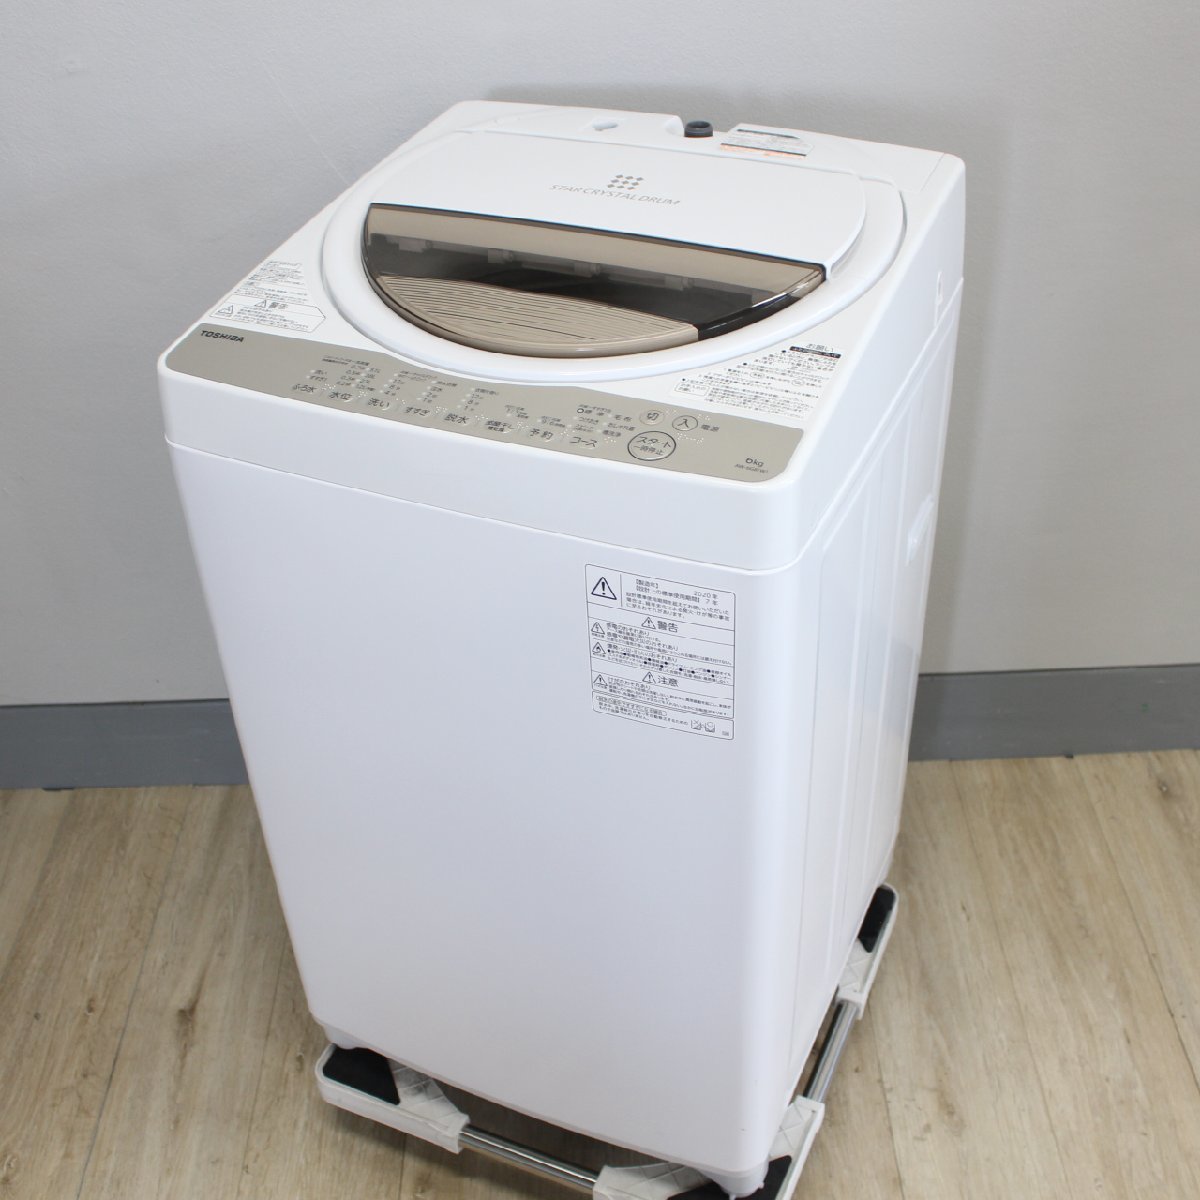 横浜市戸塚区にて 東芝 全自動洗濯機 AW-6G8 2020年製 を出張買取させて頂きました。